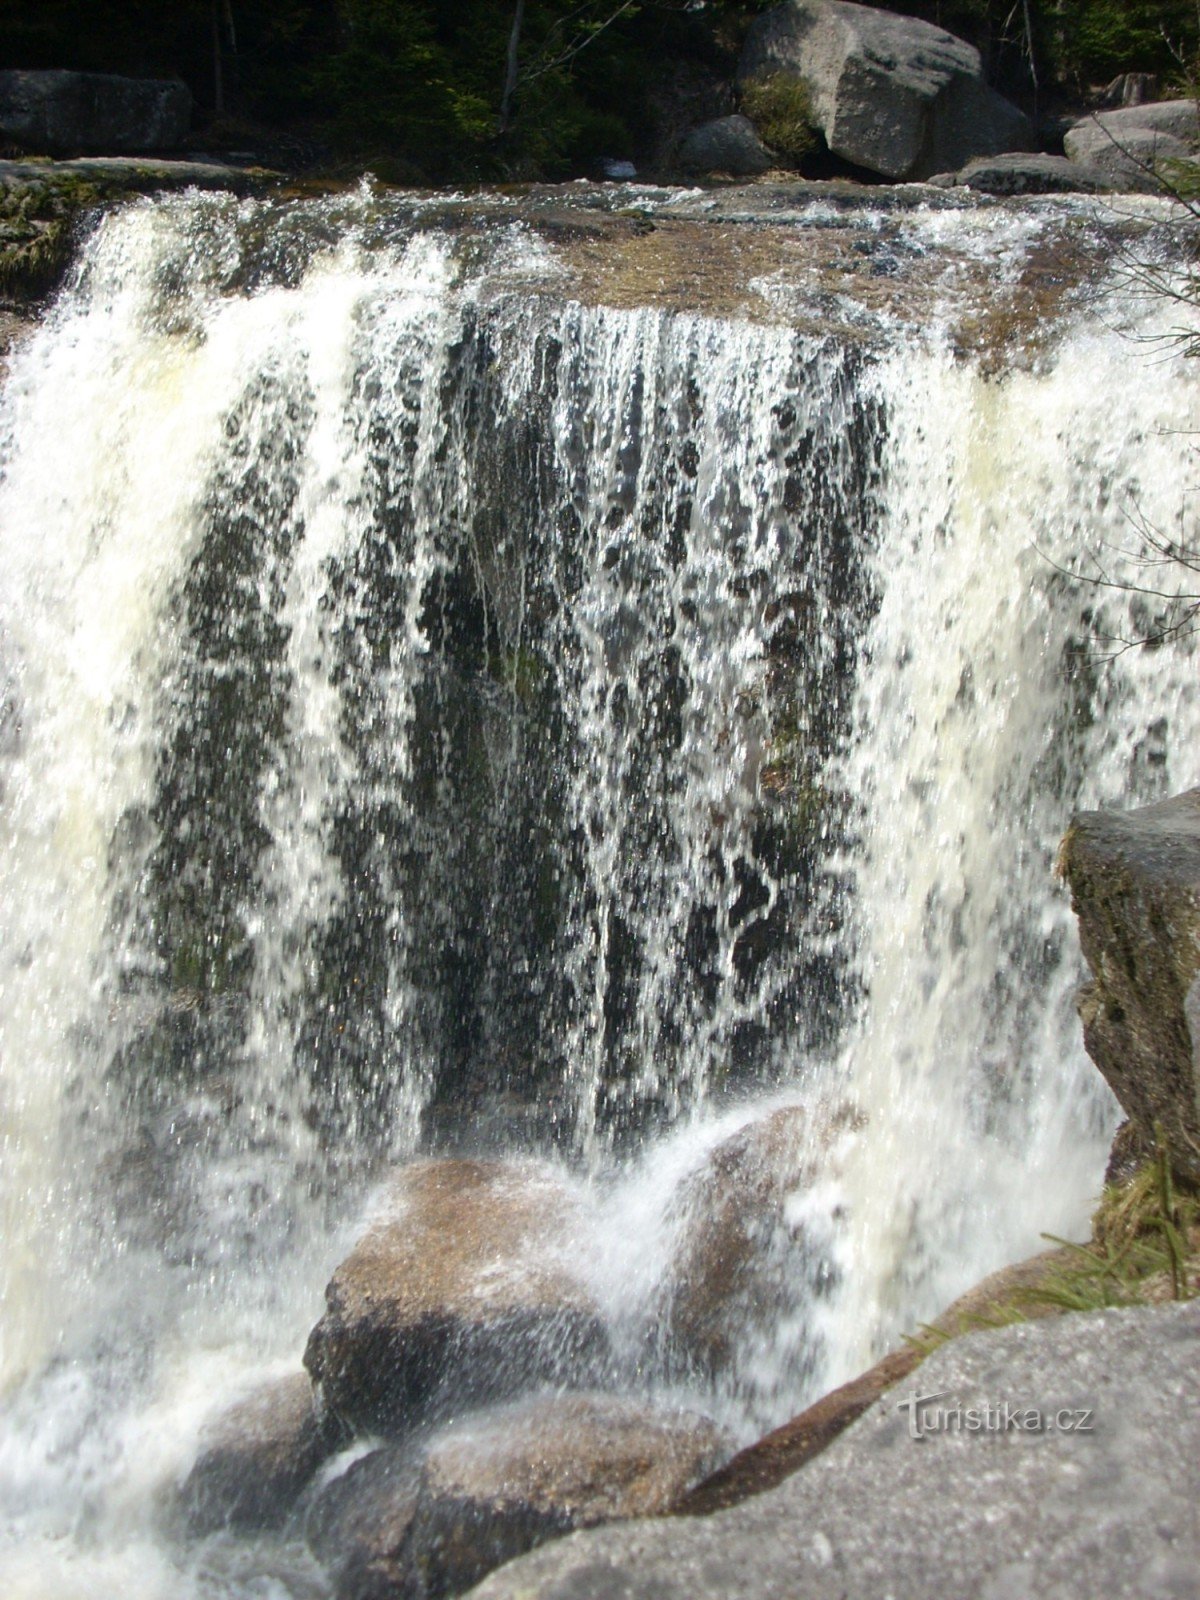 Největší a nejkrásnější vodopád Jizerských hor - Jedlové vodopády